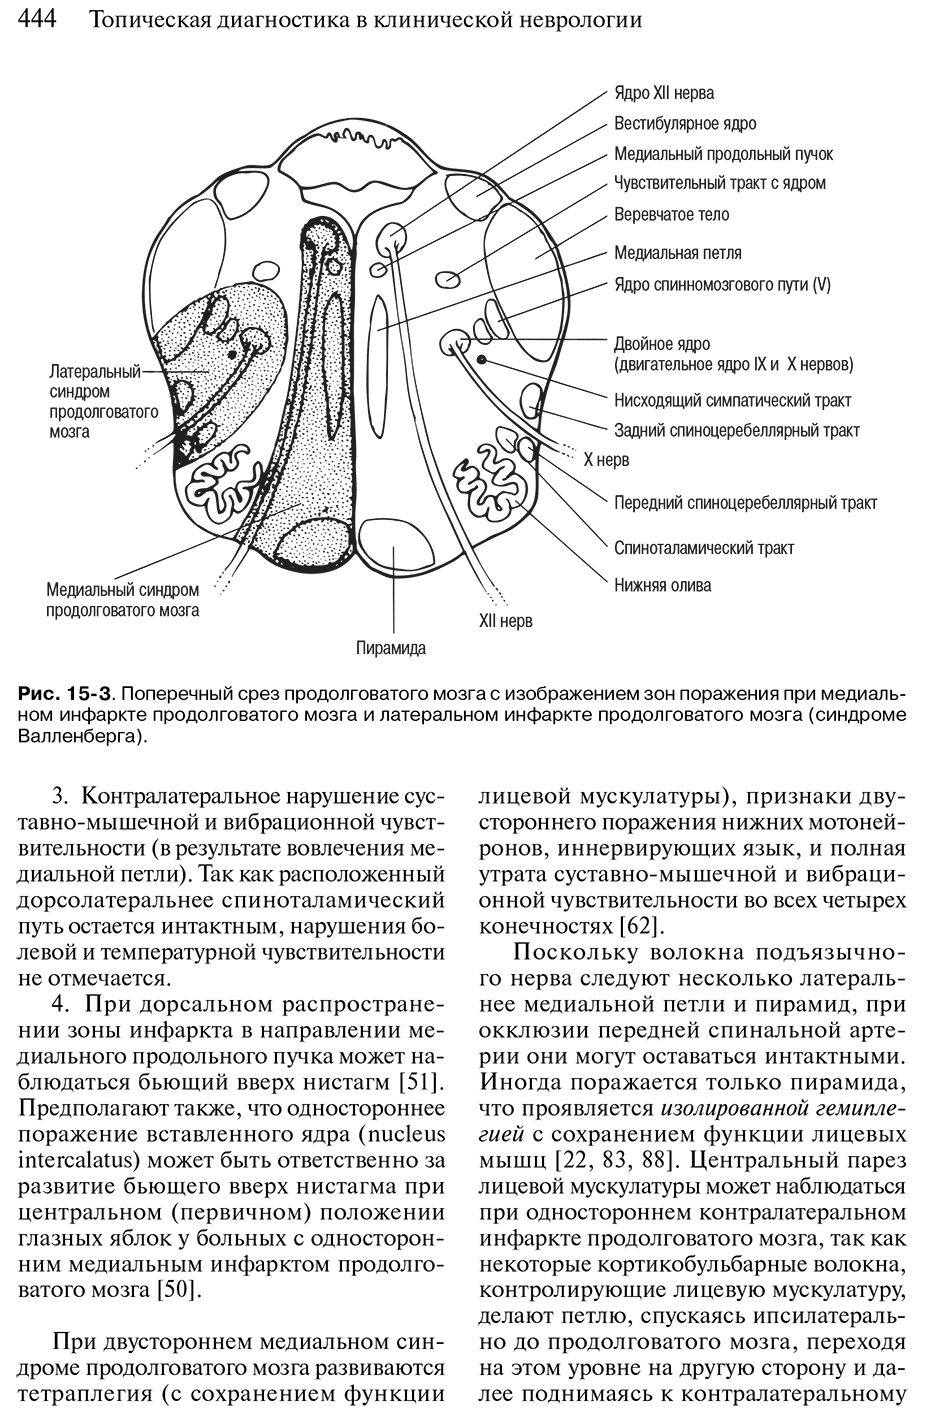 Рис. 15-3. Поперечный срез продолговатого мозга с изображением зон г